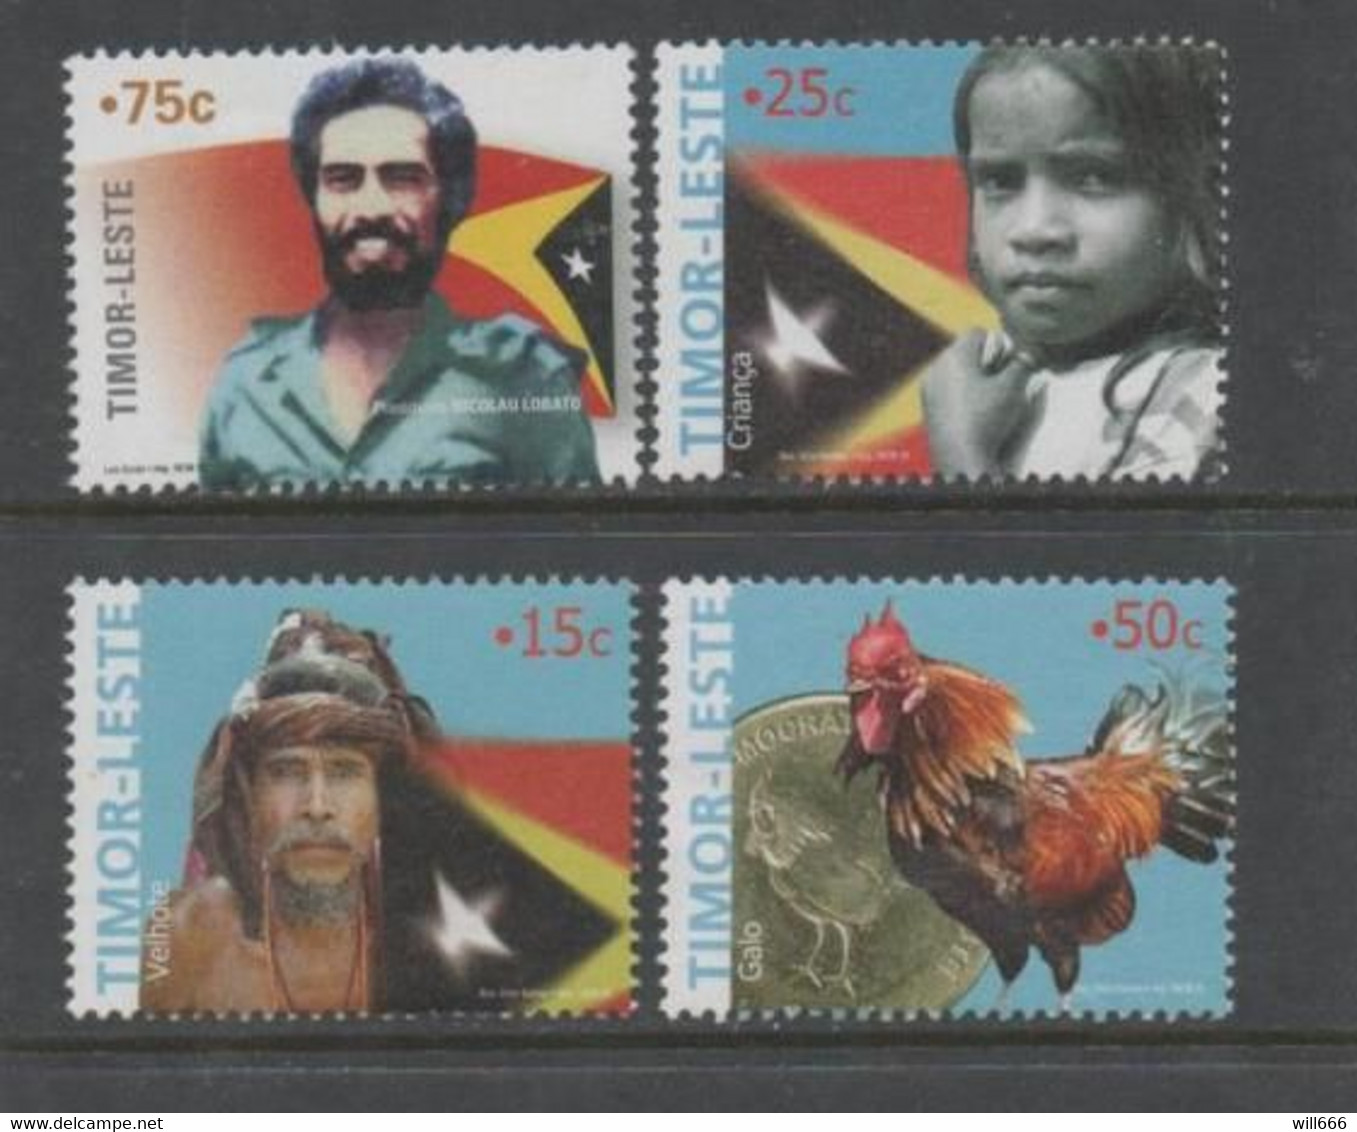 2005 Timor  - Cock, Coin, Flags - Fattoria